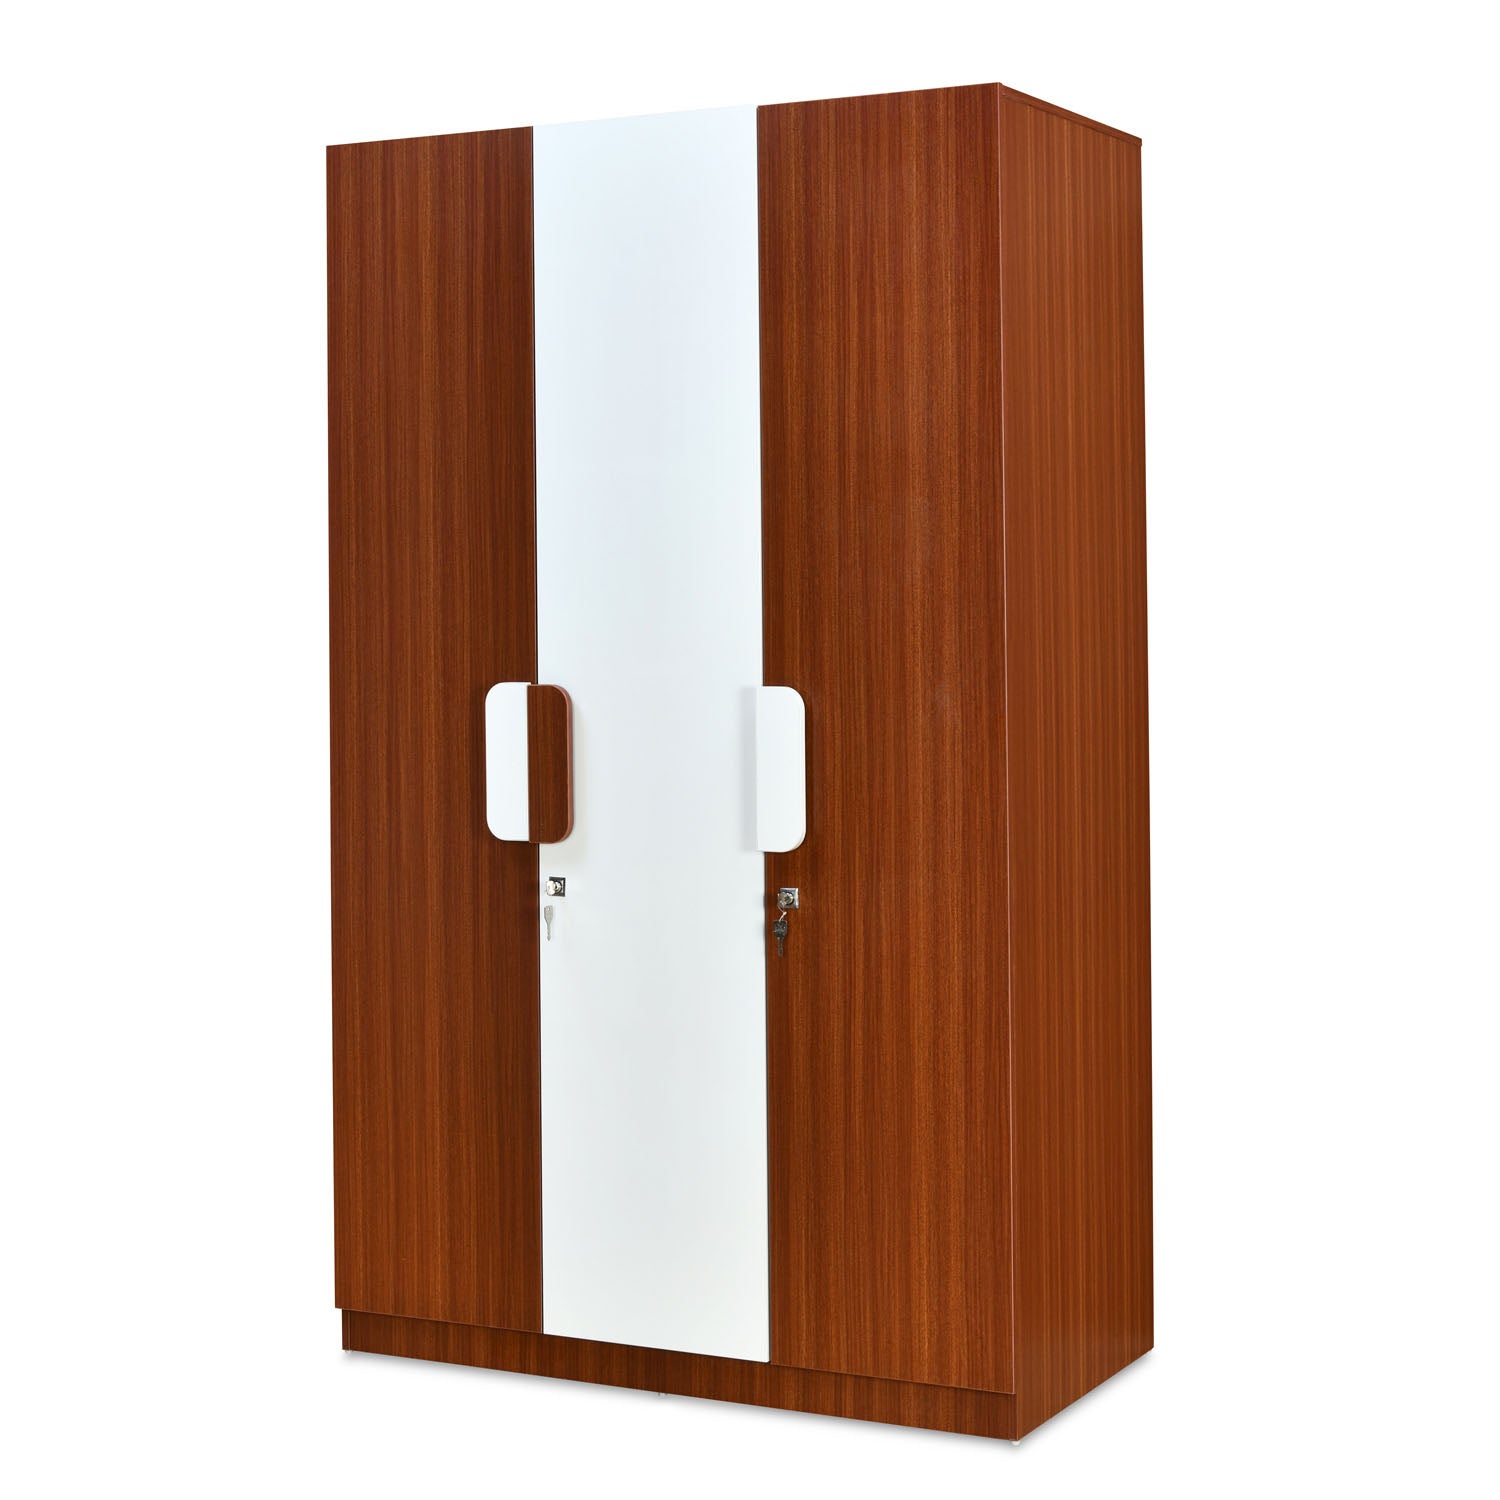 Rubix 3 Door Engineered Wood Wardrobe (Espresso)